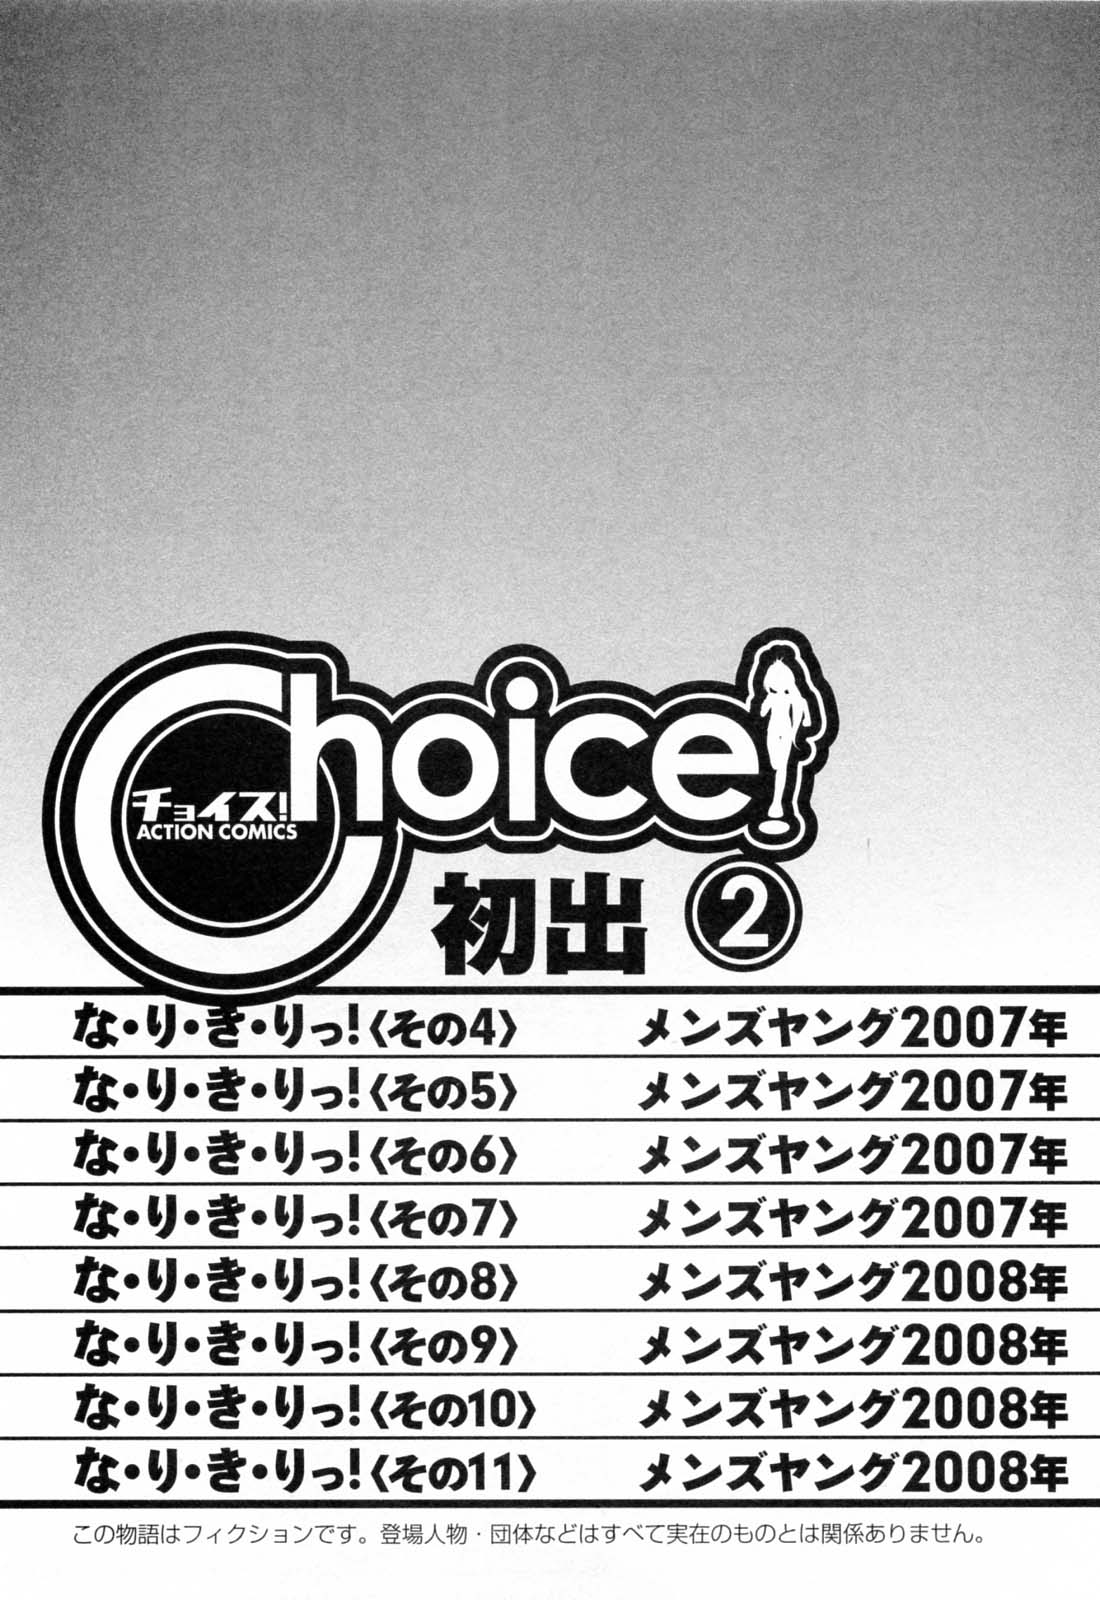 [チャーリーにしなか] Choice 第02巻